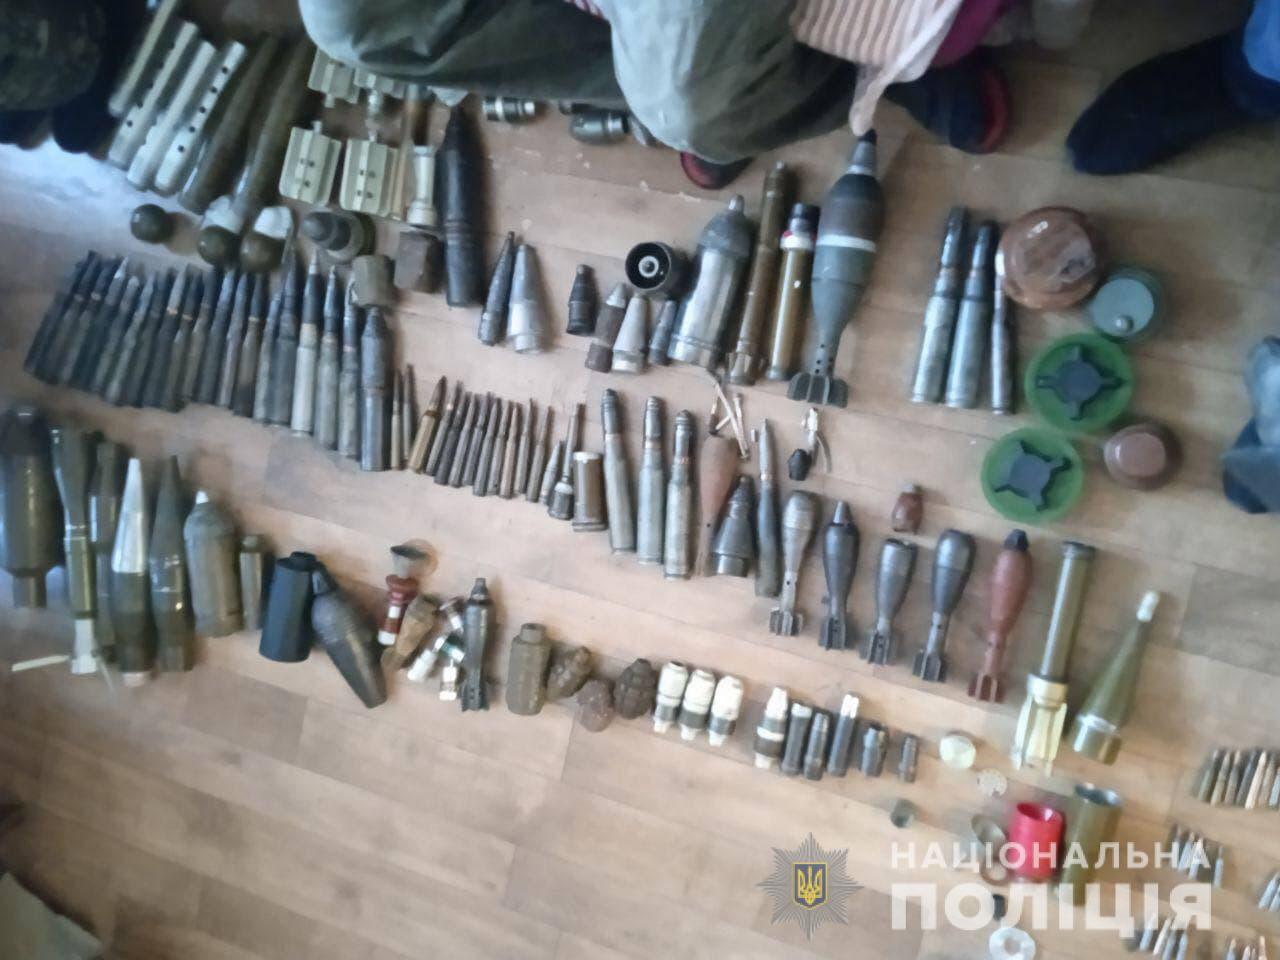 Правоохранители задержали трех бахмутчан, подозреваемых в продаже оружия и боеприпасов по Украине